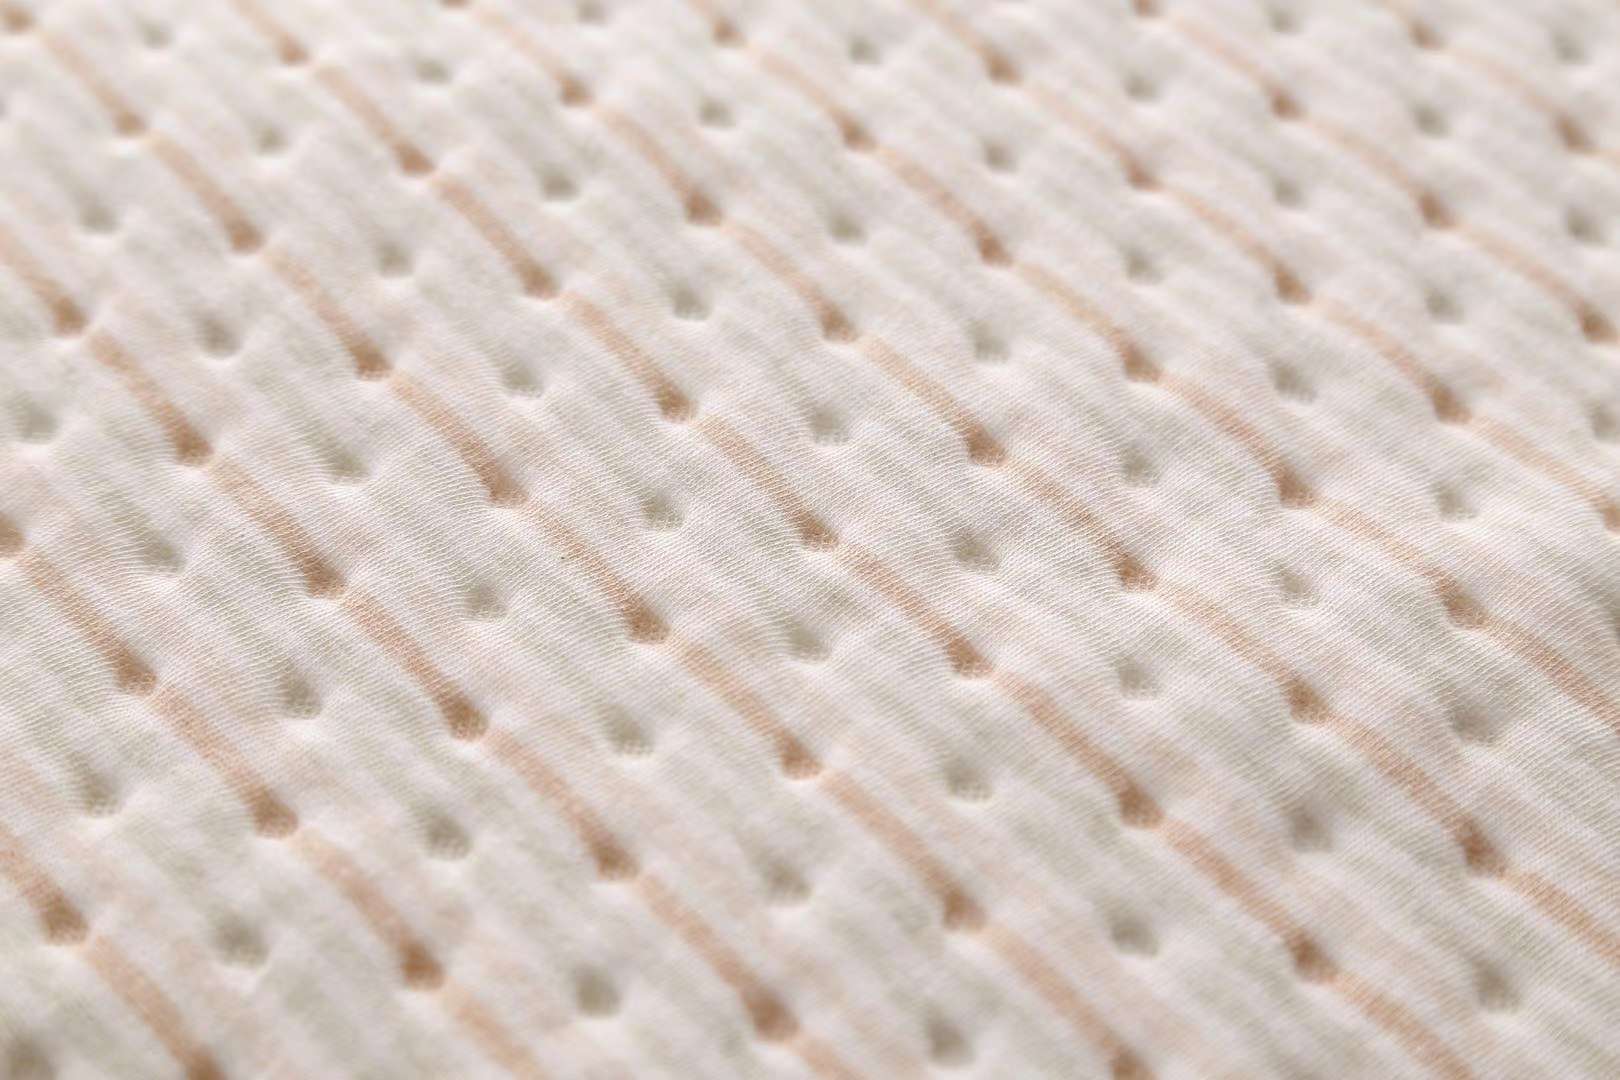 4层彩棉隔尿垫 50×70  双面可用 一面精梳彩棉 中间夹层聚酯纤维  复合tpu防水层  最后一面是竹纤维 吸水性强详情图5